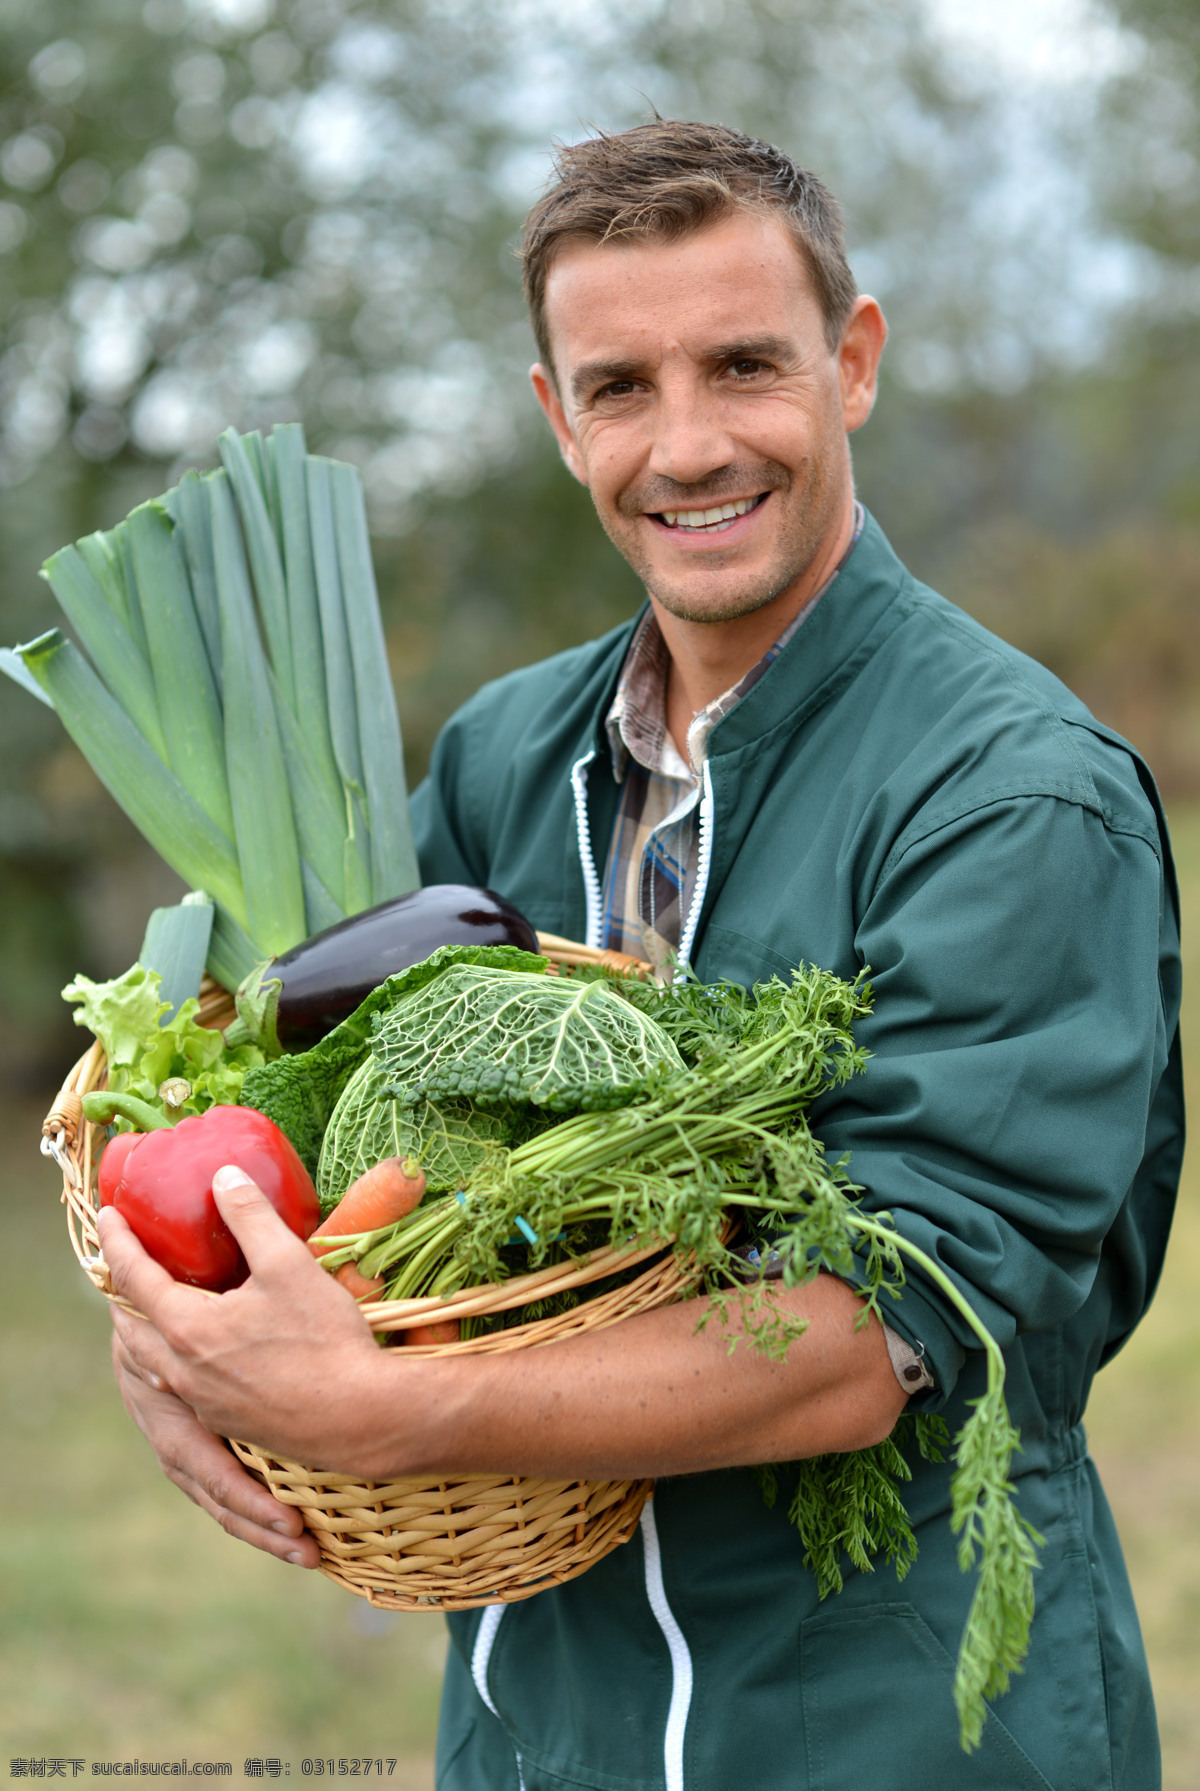 抱 新鲜 蔬菜 男人 男性 竹篮 职业人物 农民 生活人物 人物图片